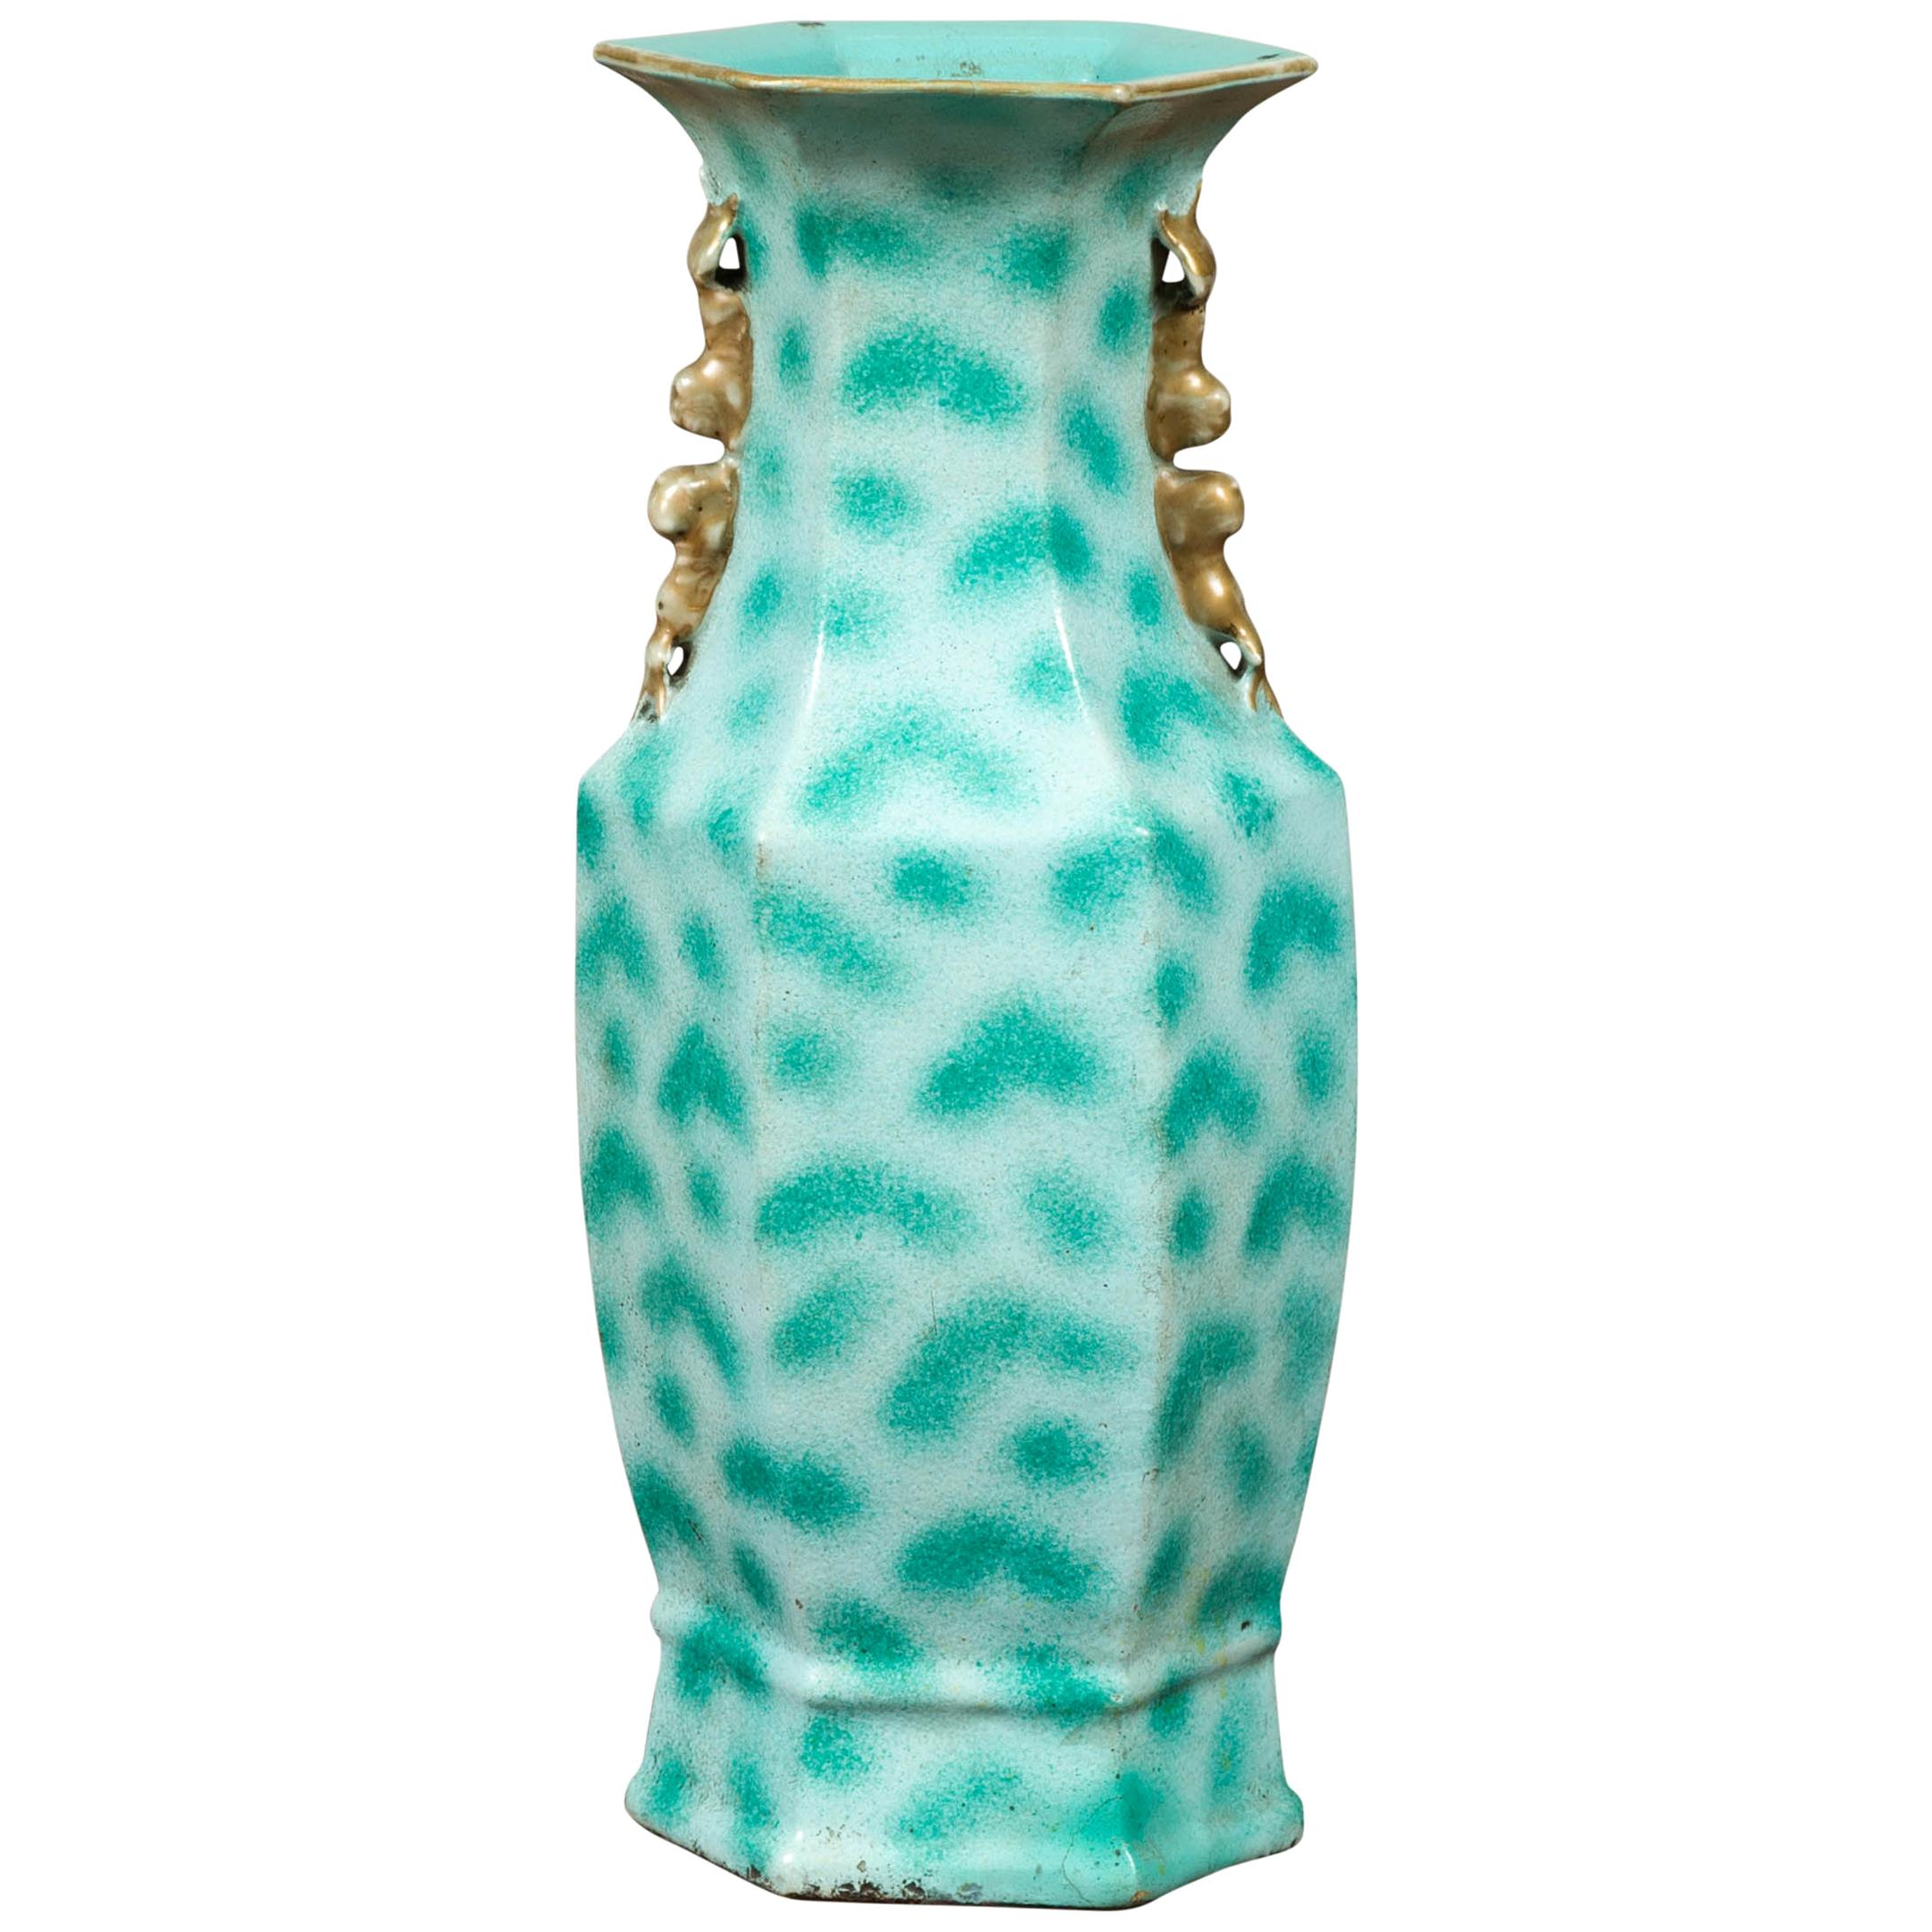 Chinesische türkisfarbene Vase mit Fleckenmuster und sechseckigem Hals